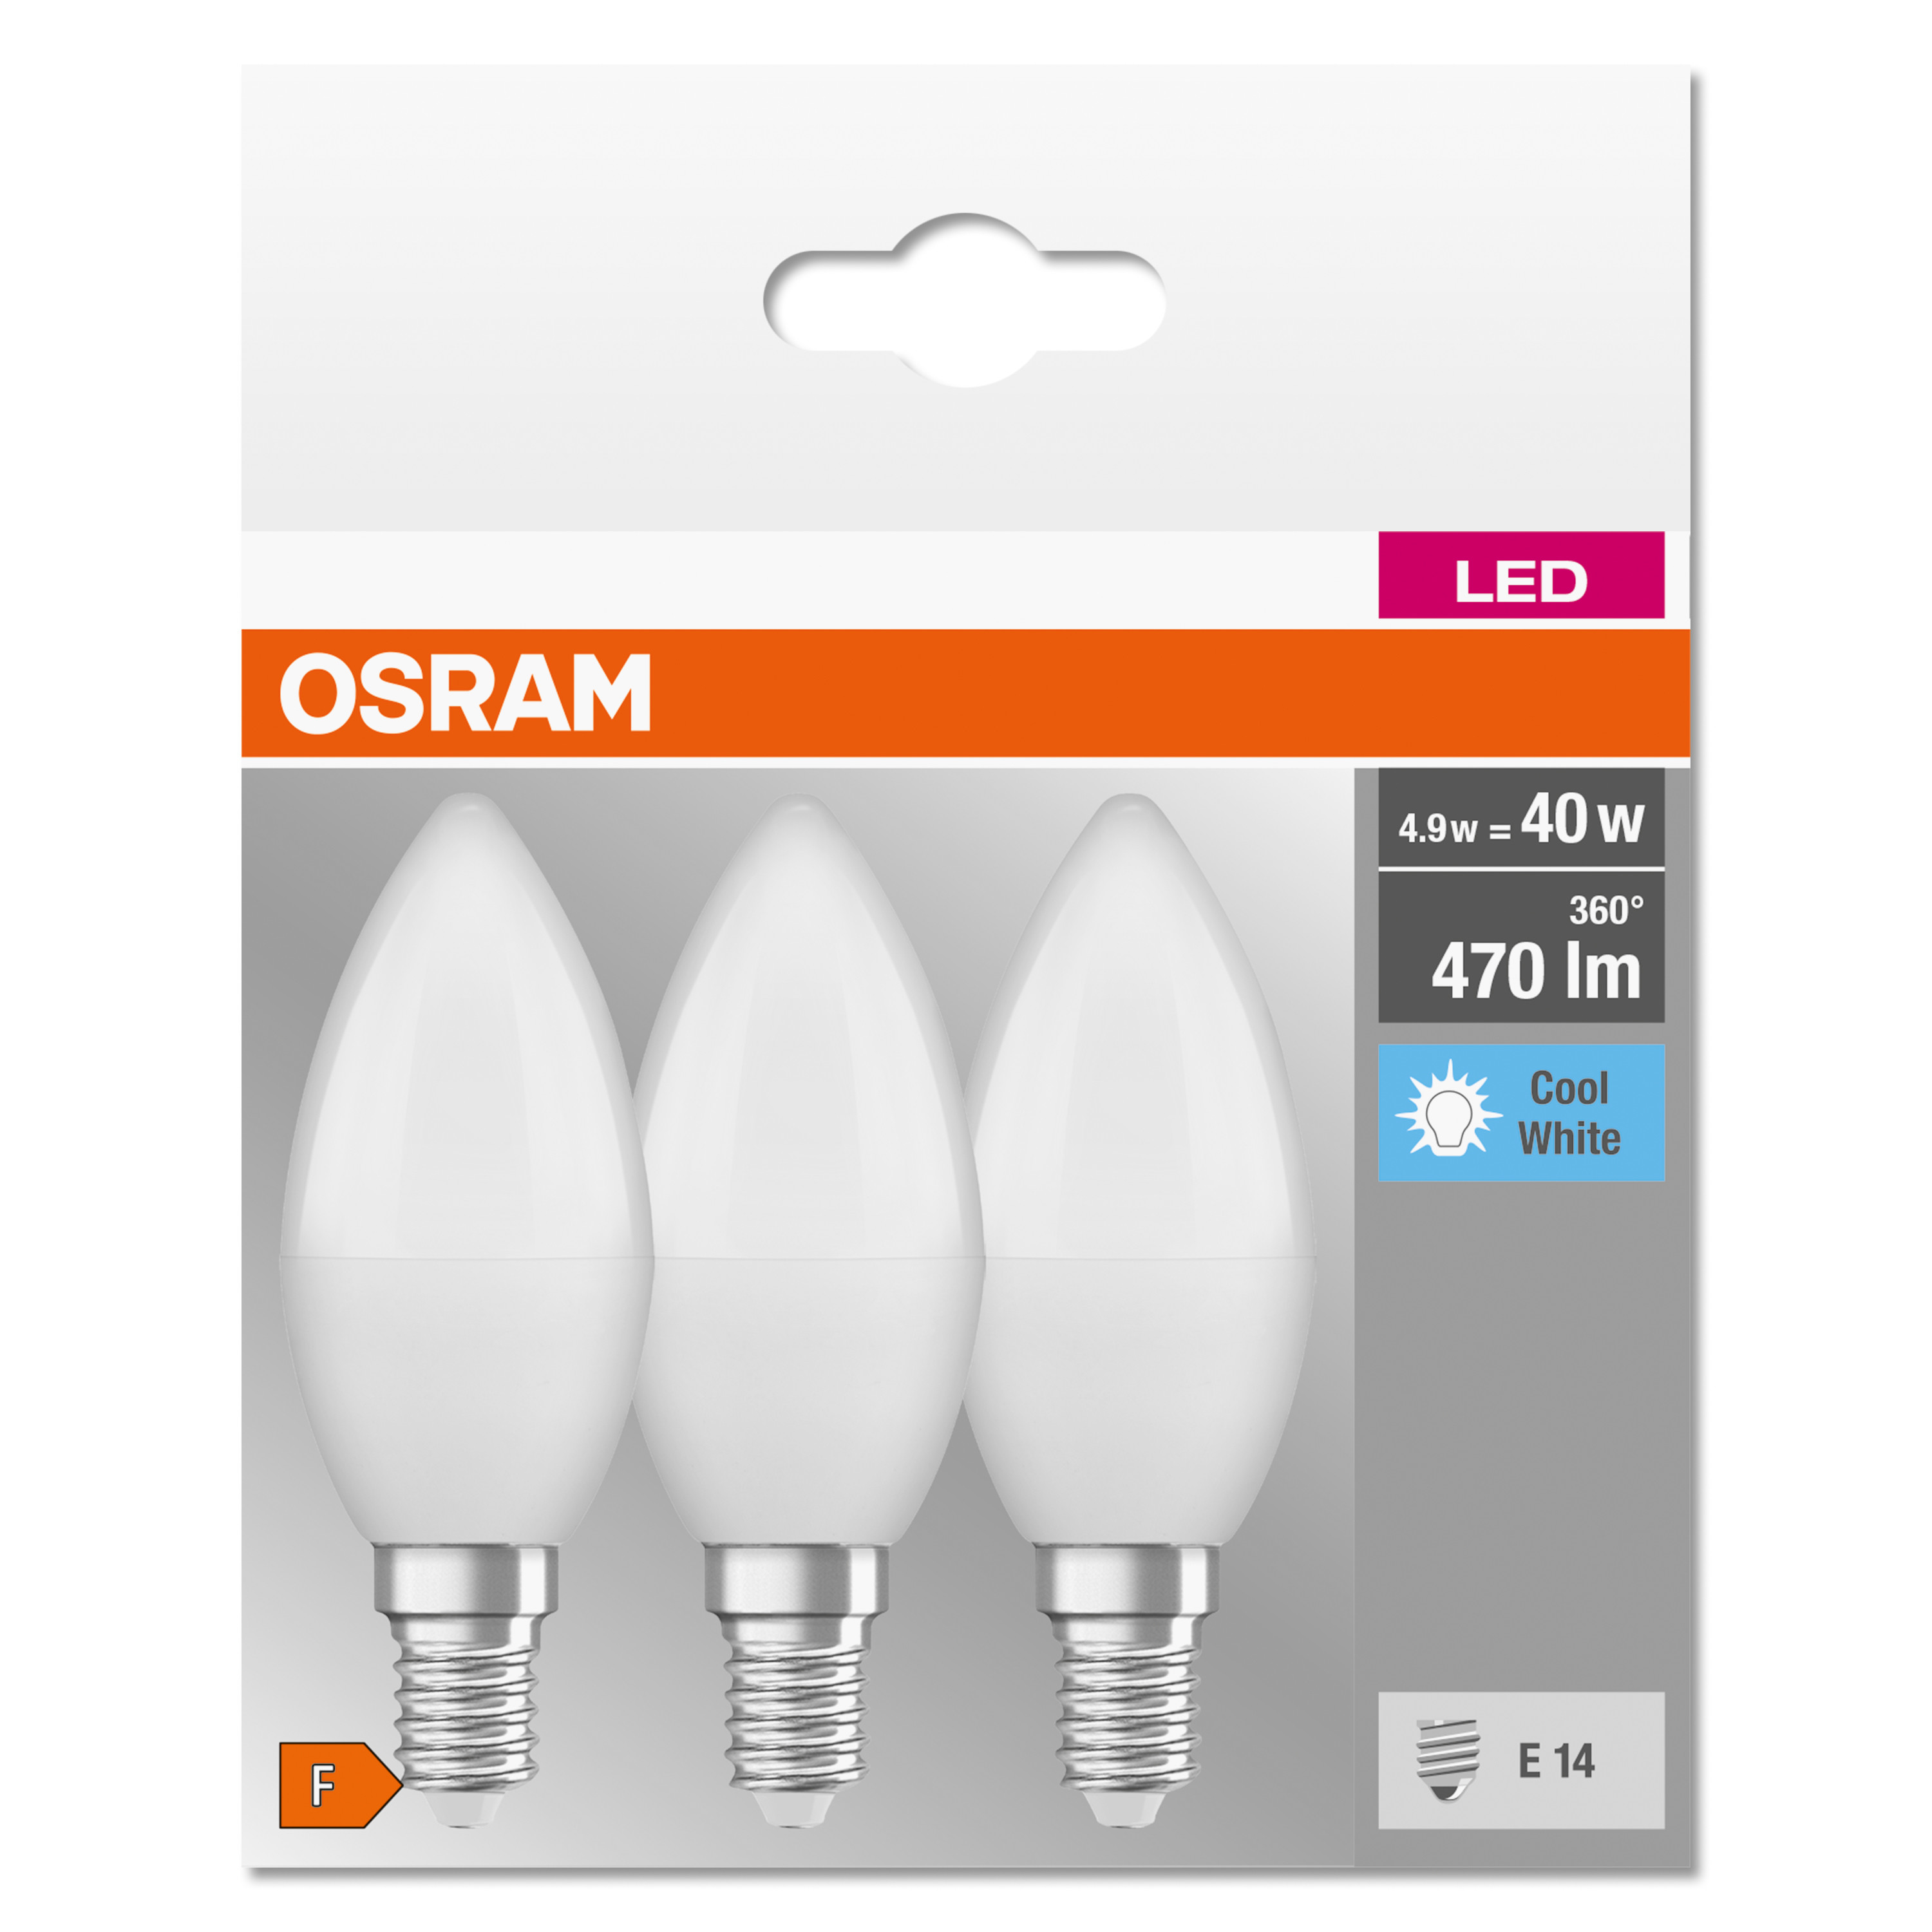 LED BASE CLASSIC 470 B Kaltweiß lumen LED OSRAM  Lampe